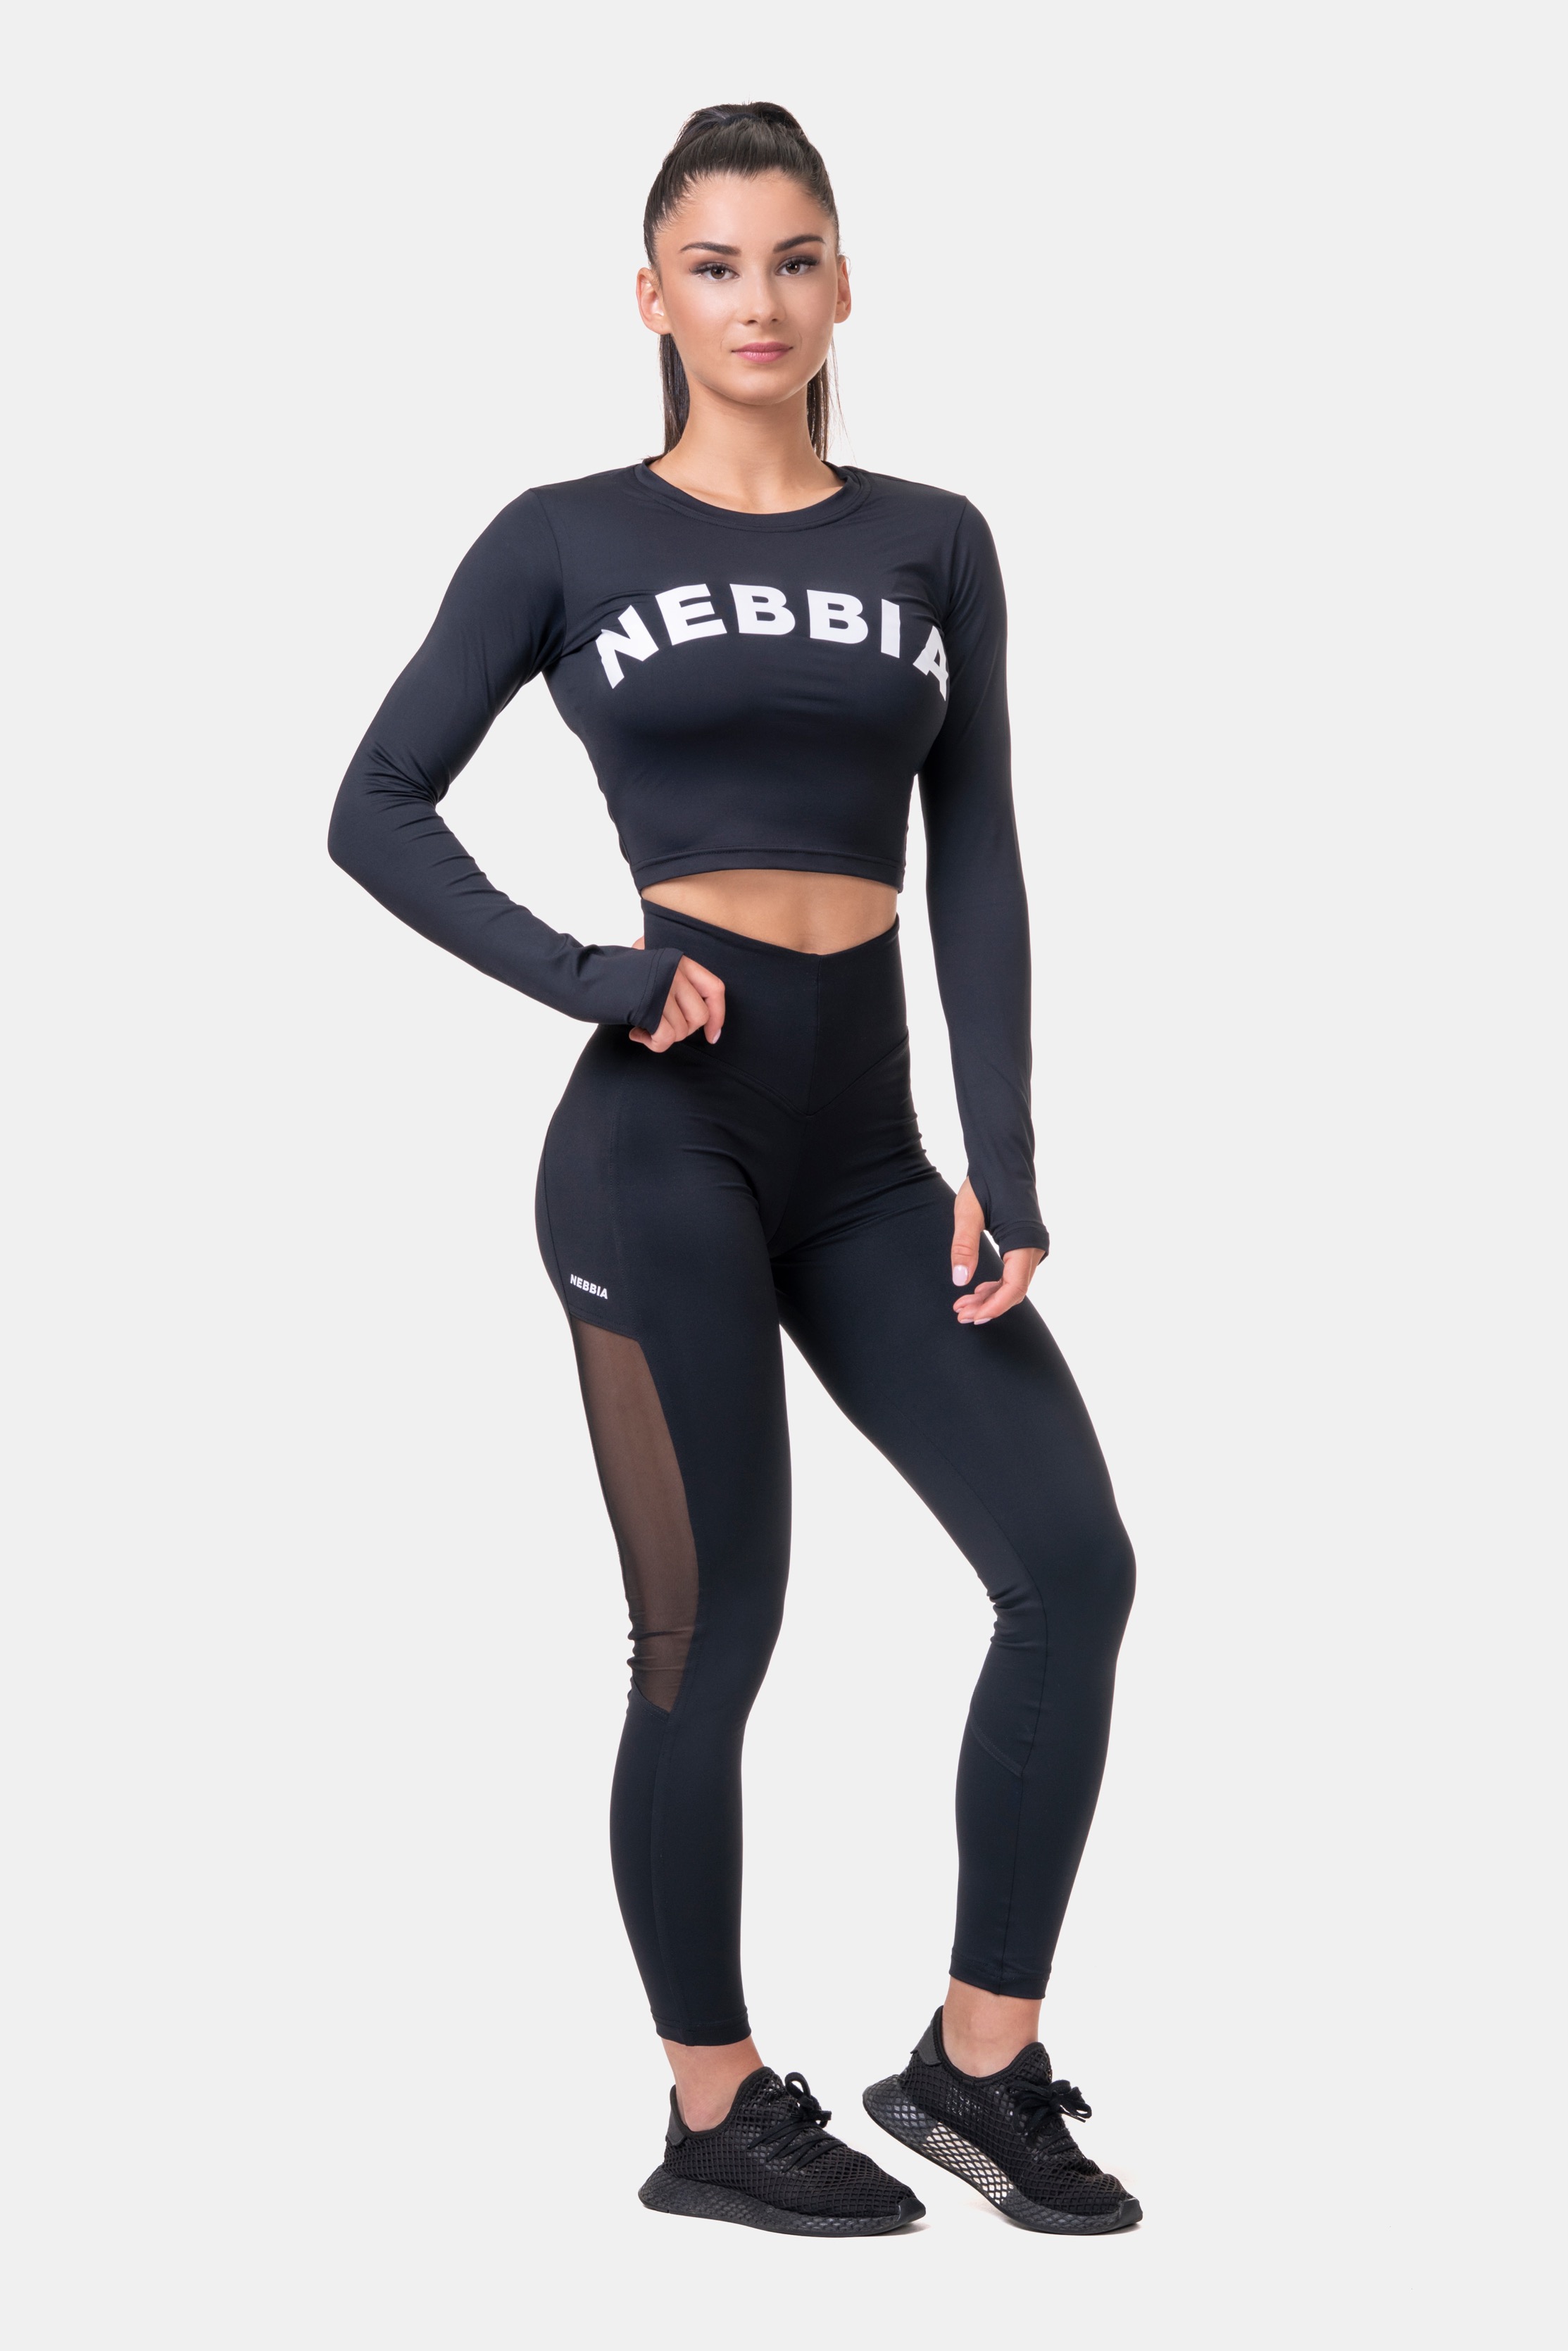 nebbia-mesh-leginy-s-vysokym-pasom-573-black